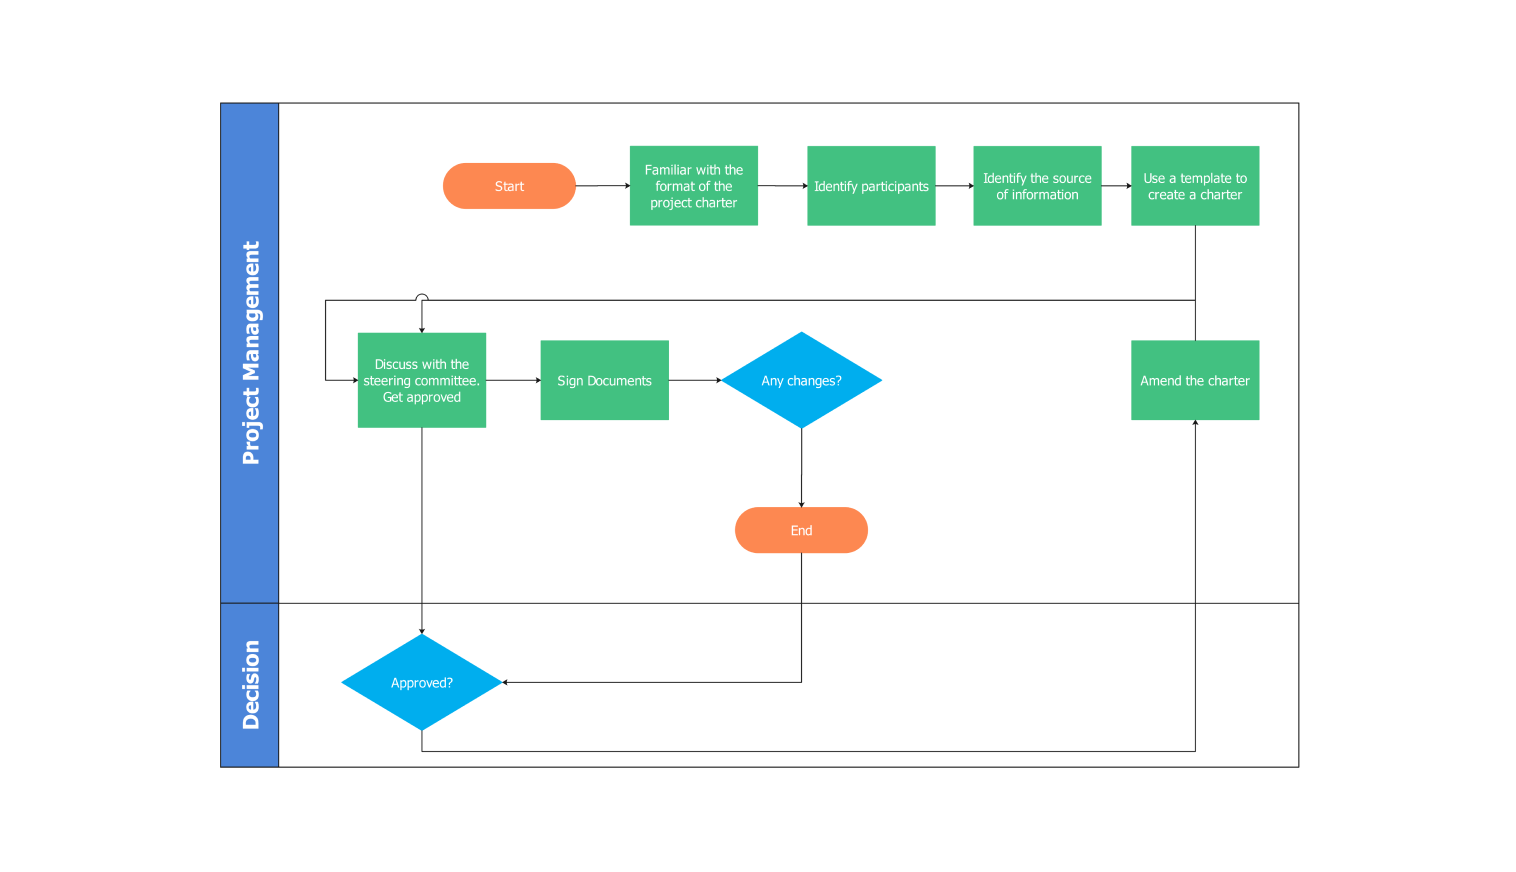 project management diagram